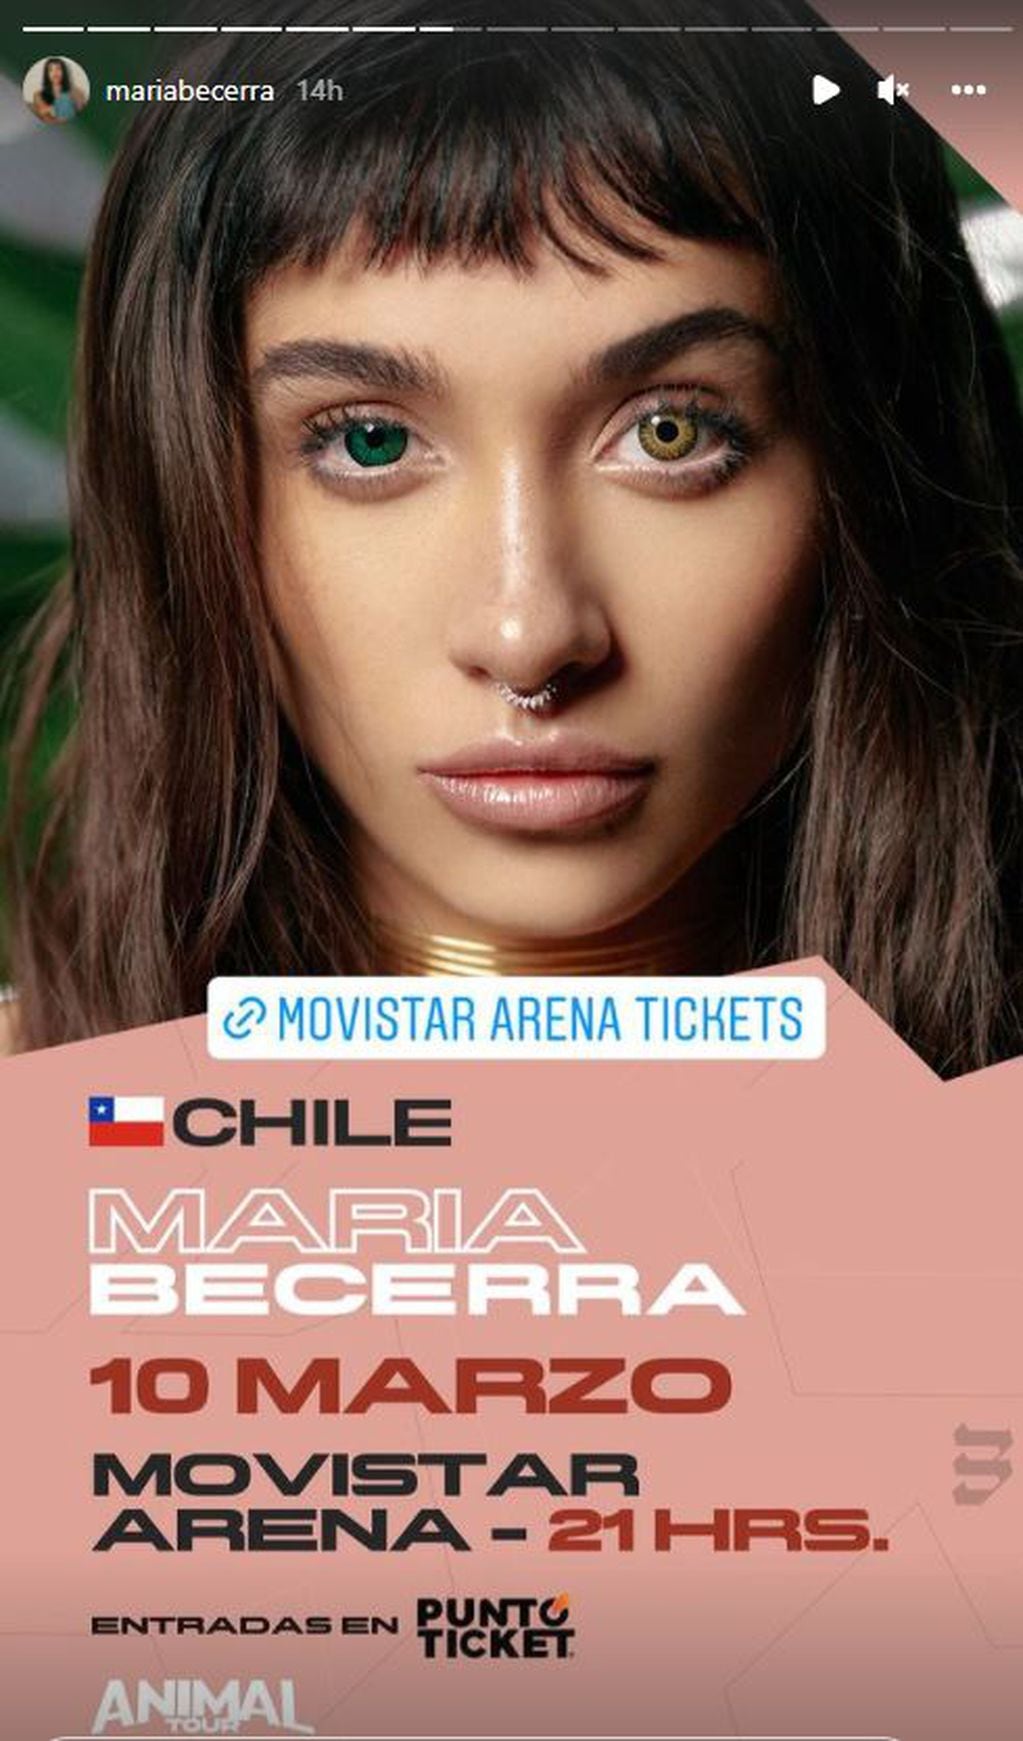 María Becerra se presenta por primera vez en Chile.